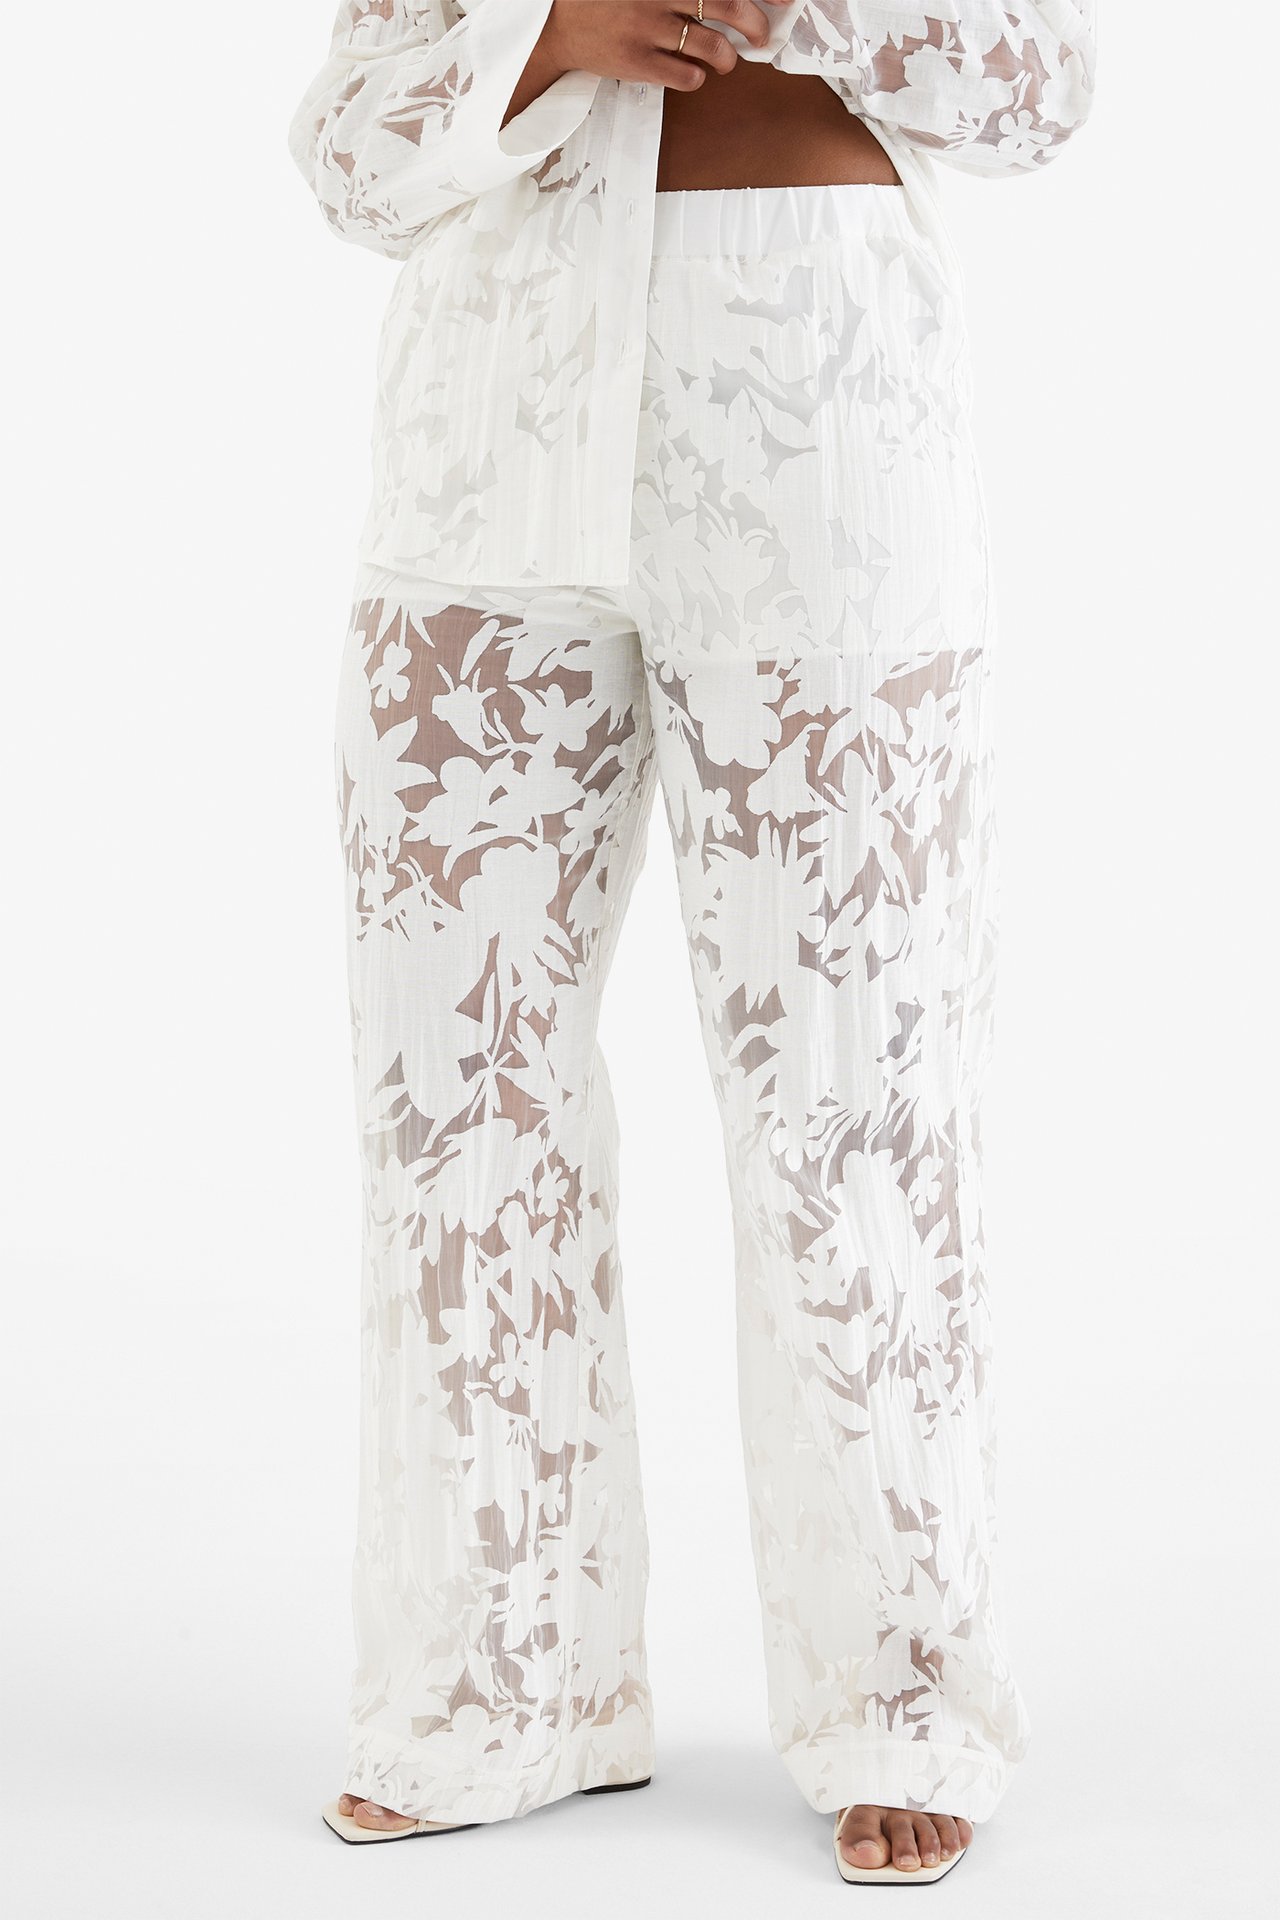 Spodnie we wzory - Offwhite - 168cm / Storlek: M - 2